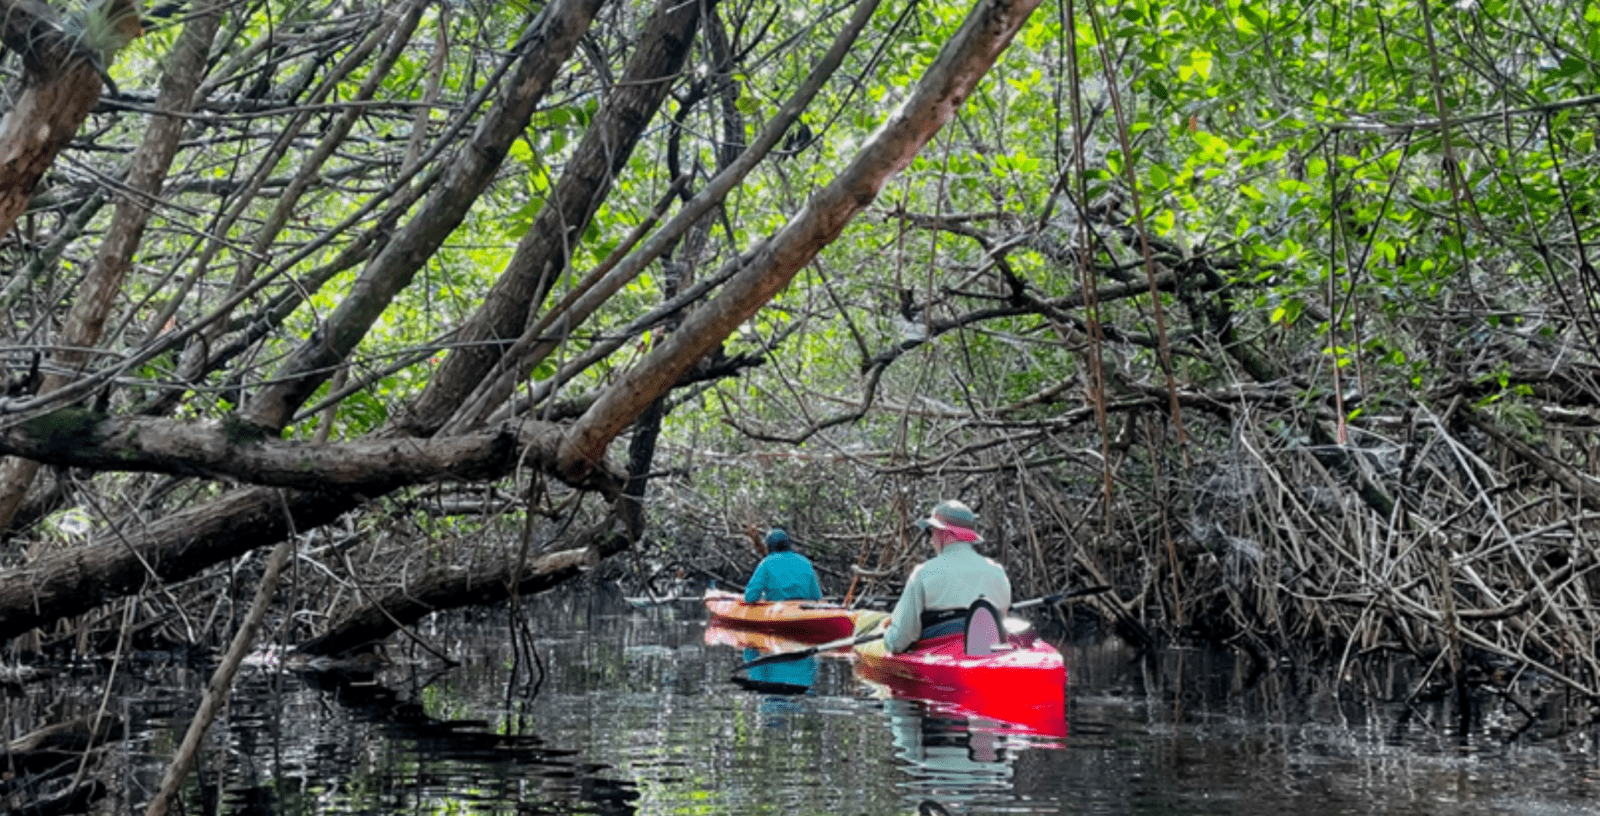 Kayaking through Turner River mangrove tunnels. Credit: Glenn Watkins